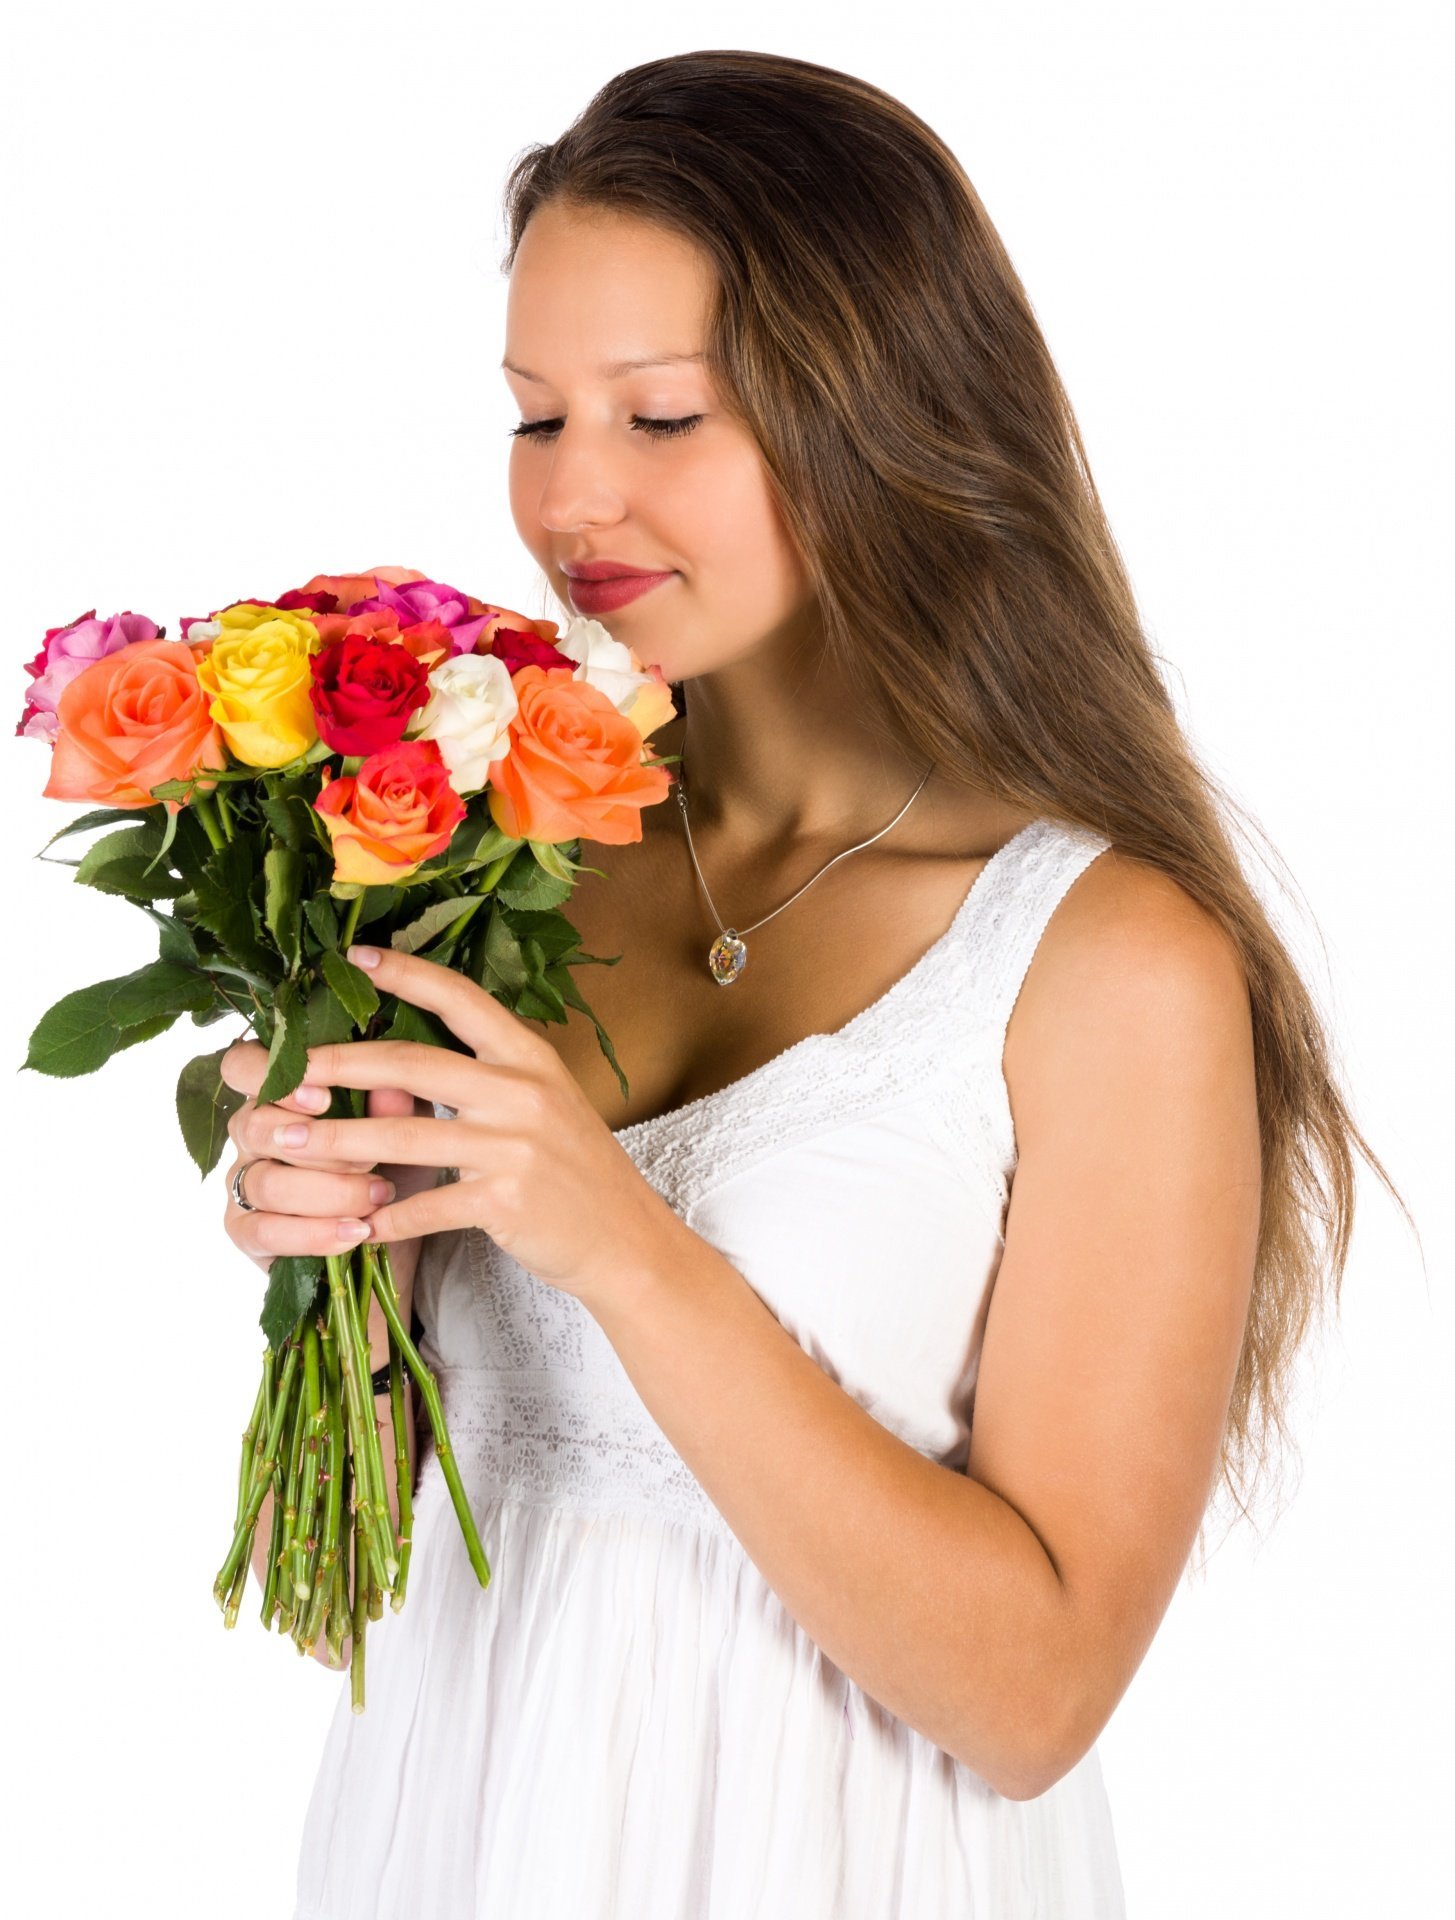 Девчонки дарят цветы. Букет "девушке". Букет цветов для женщины. Девушка с цветами. Букет в руках у женщины.